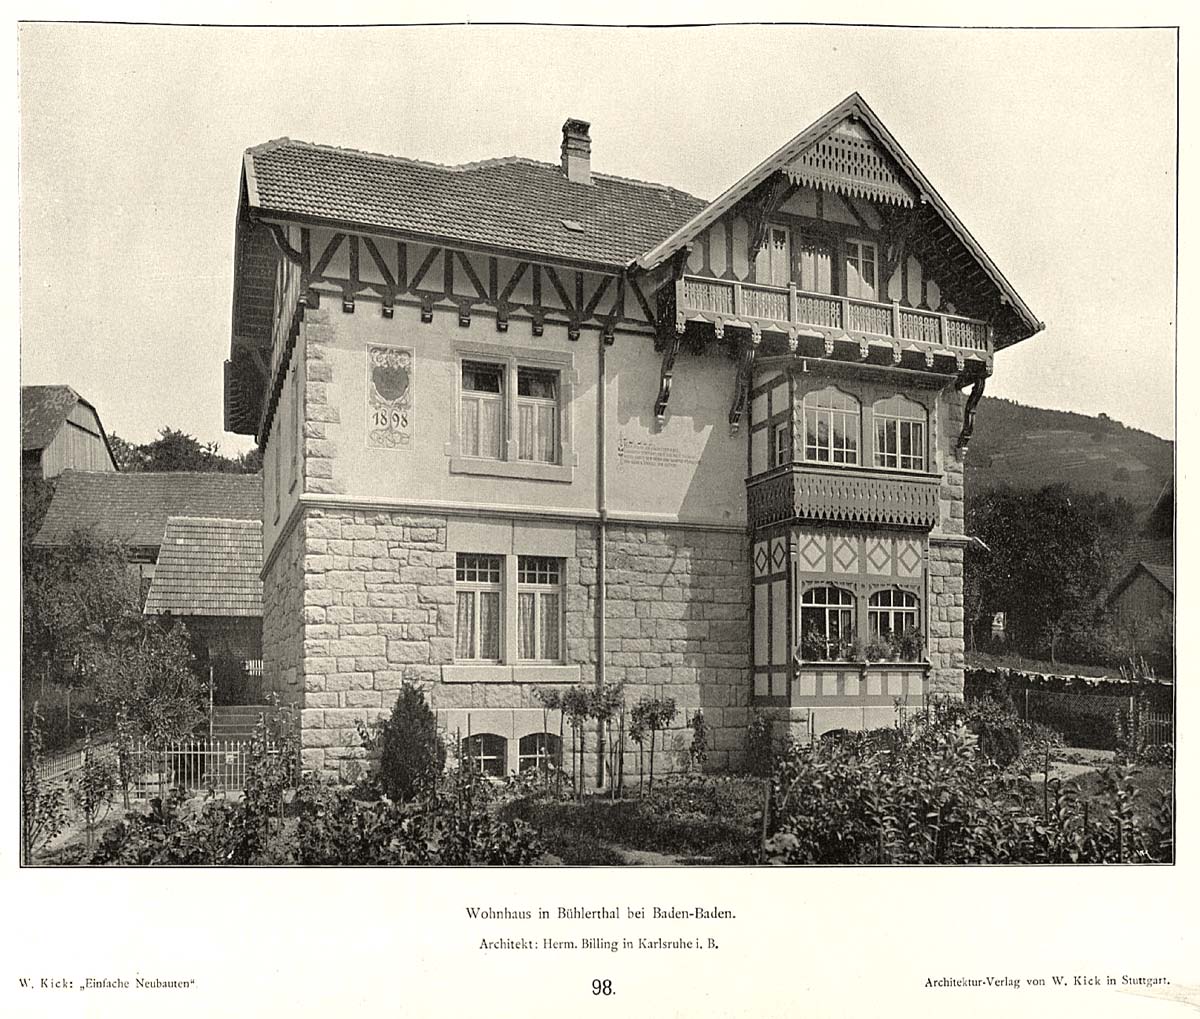 Bühlertal. Wohnhaus, Architekt Hermann Billing